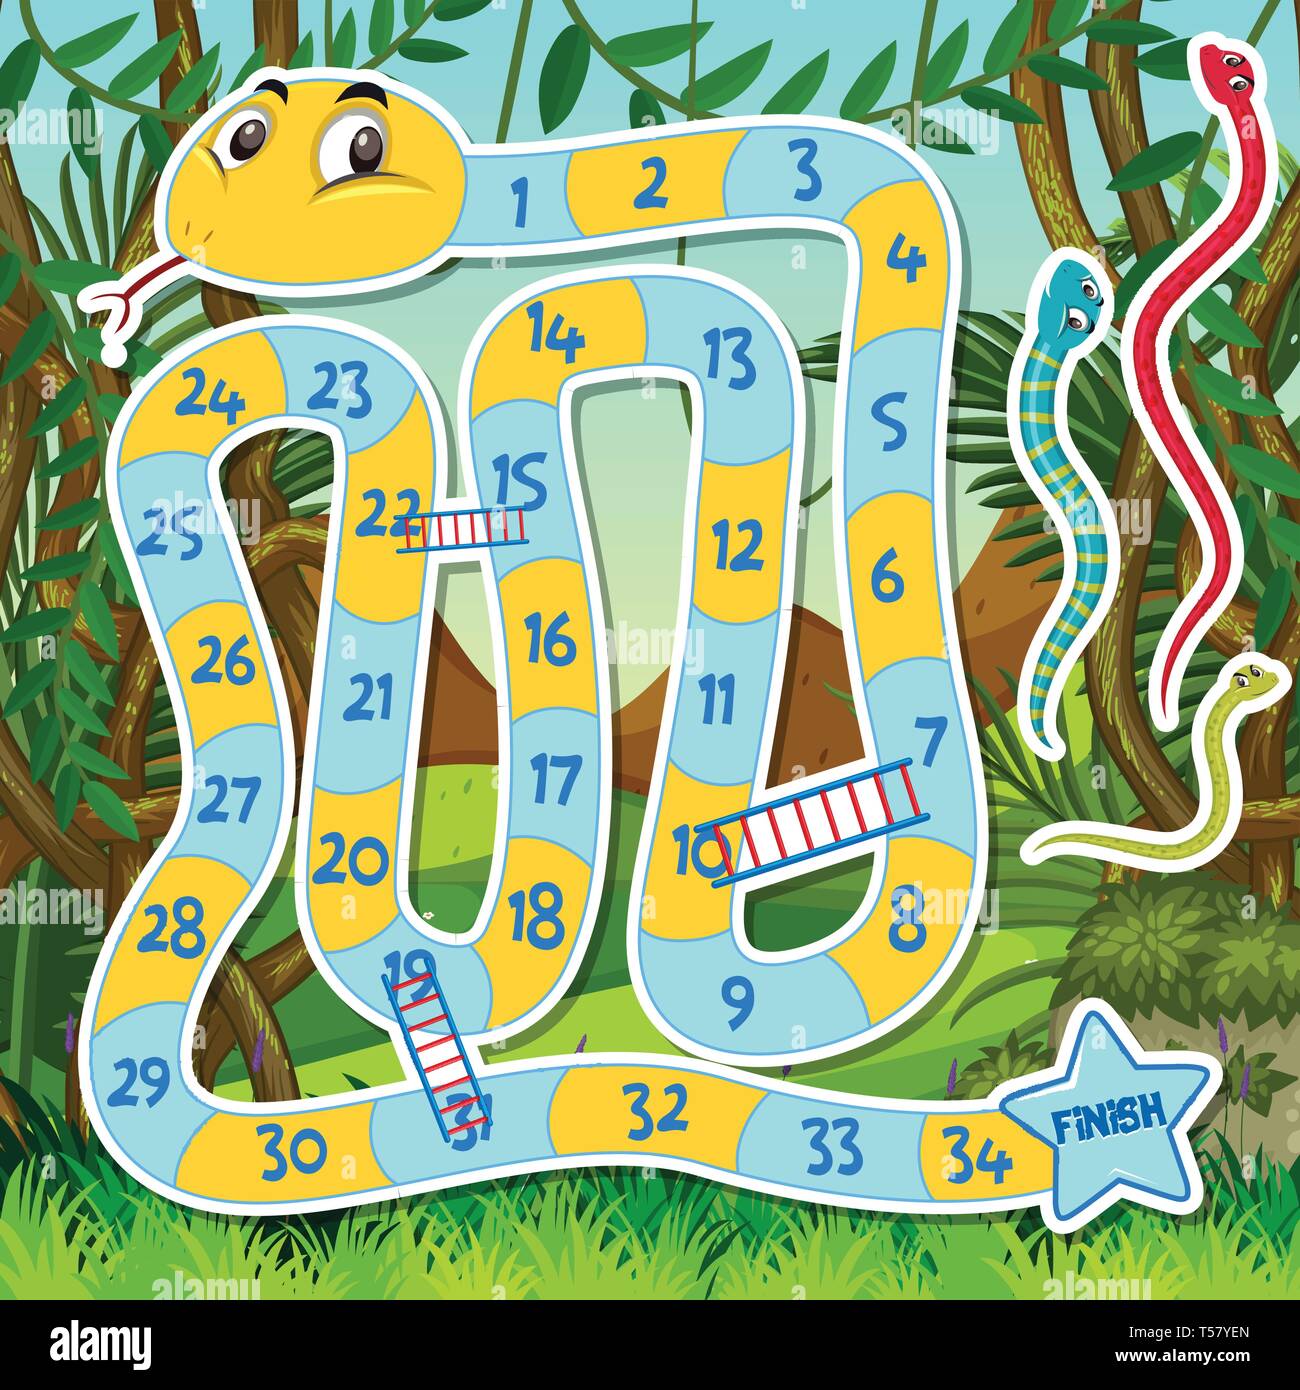 Snake Ladder Jogo Tabuleiro Para Crianças Modelo Ilustração vetor(es) de  stock de ©brgfx 494597290